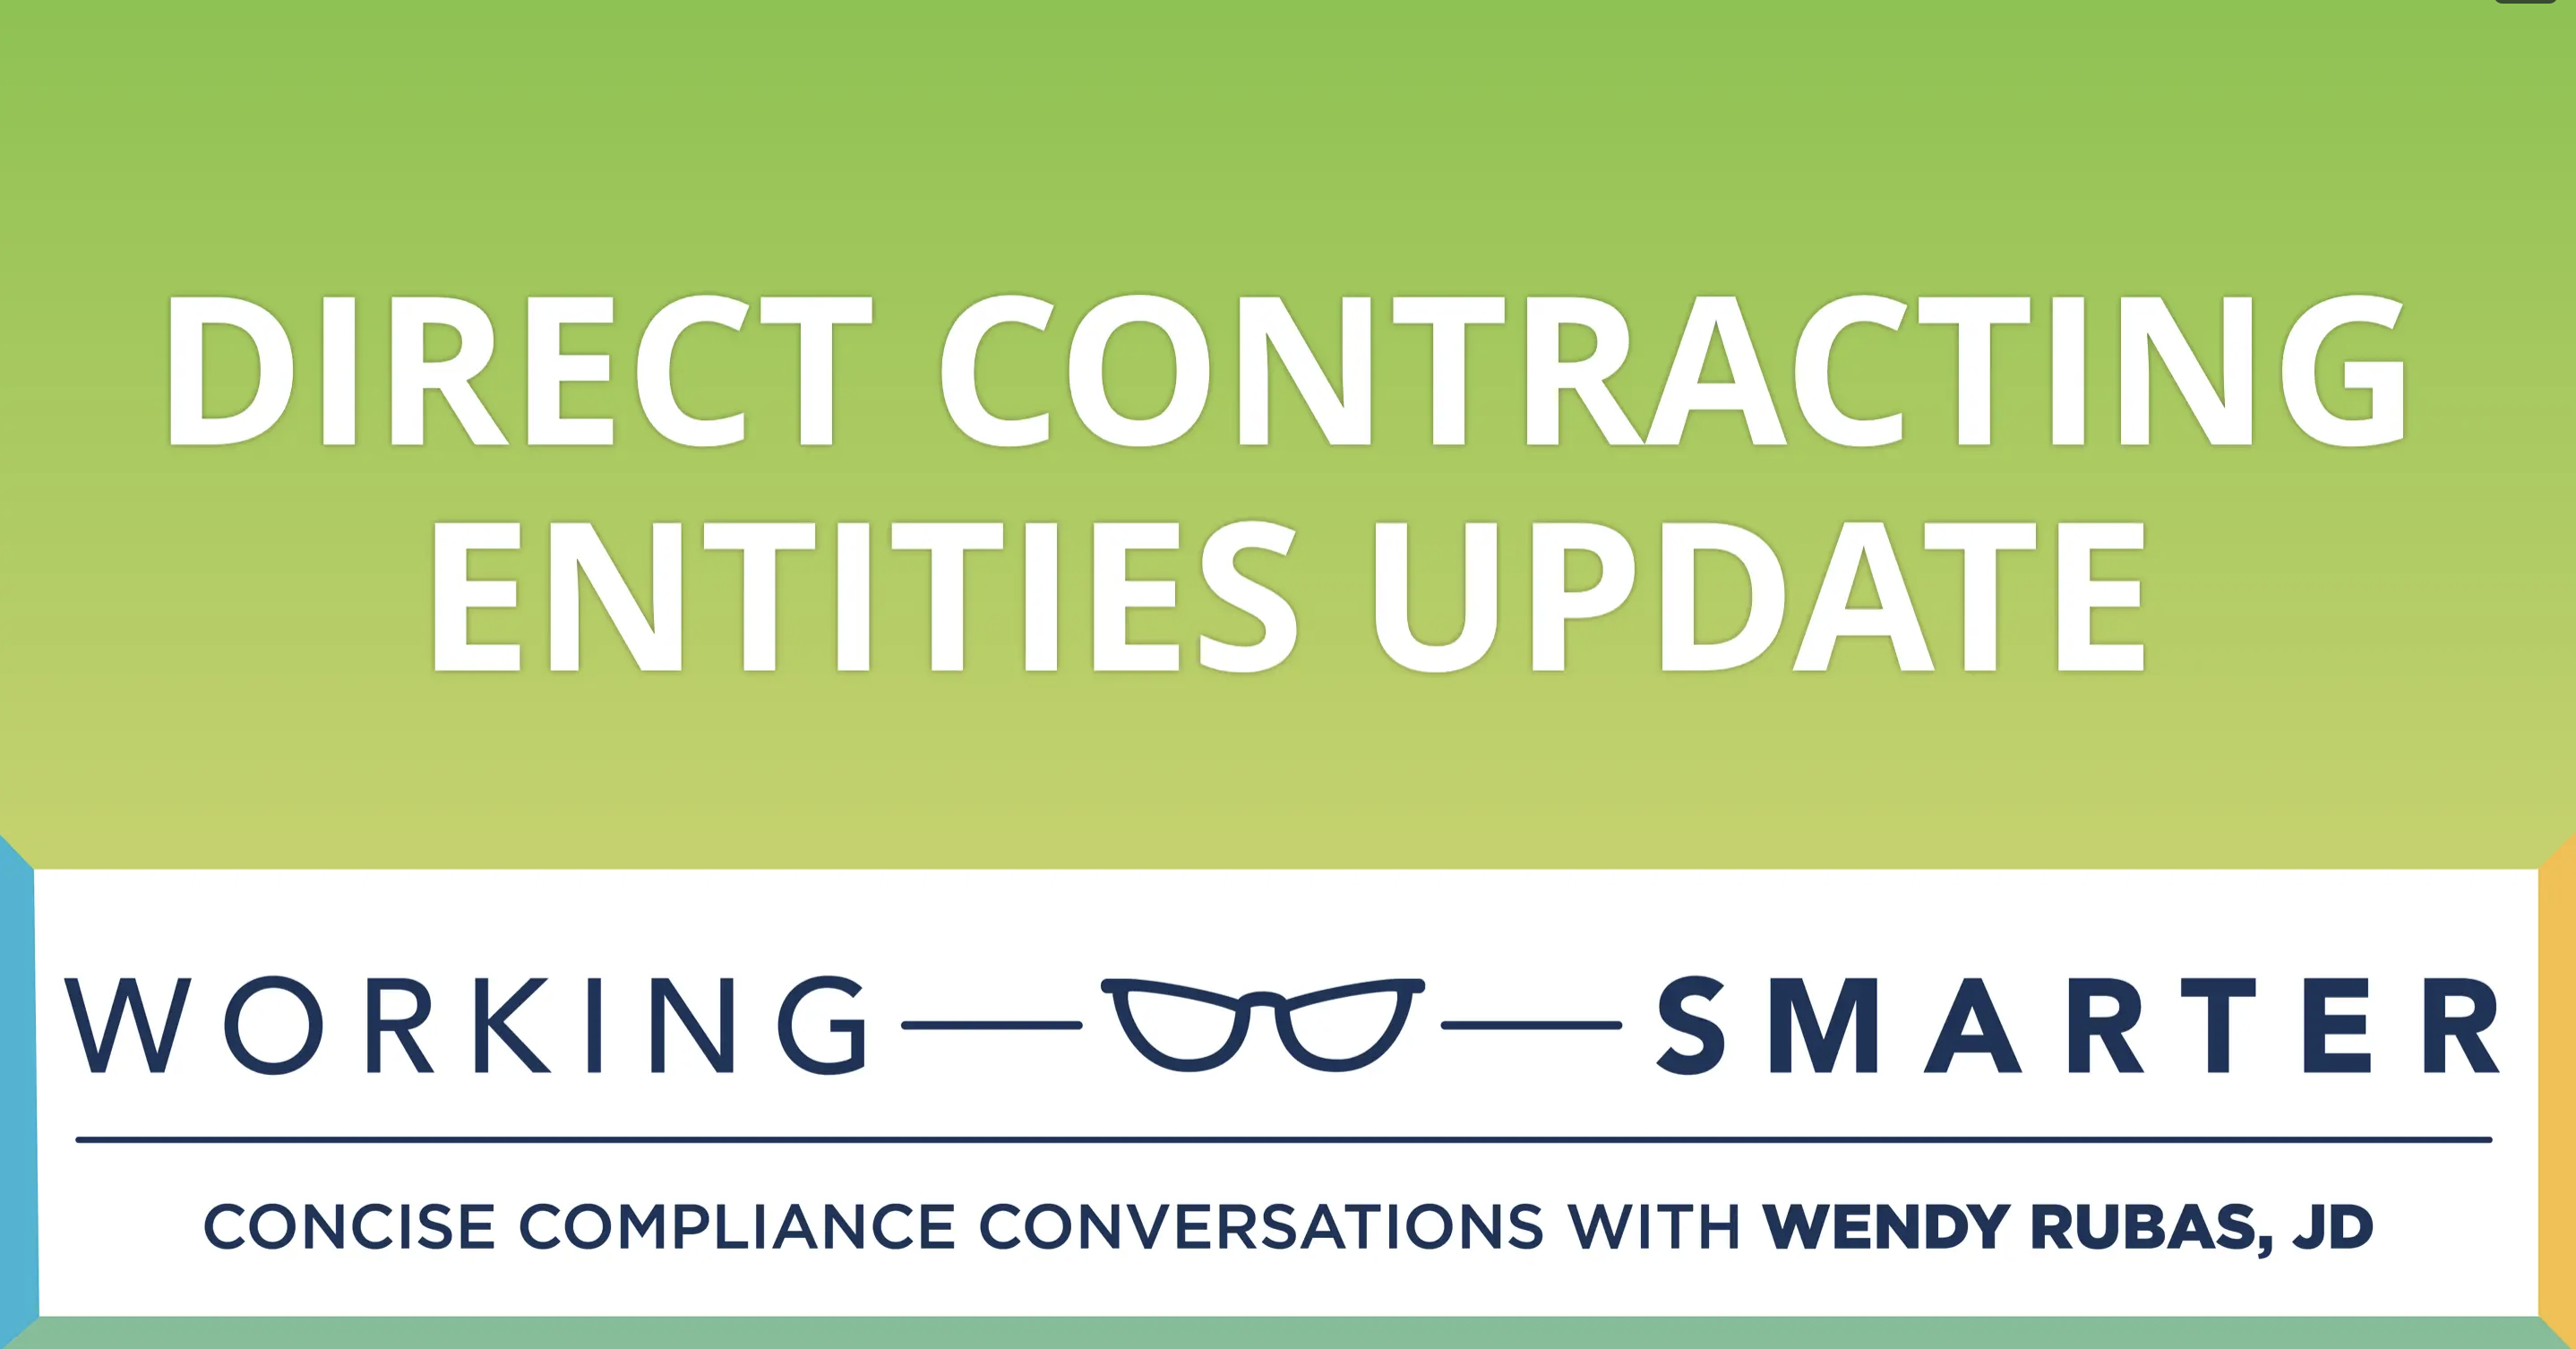 Working Smarter: Direct Contracting Entities Update